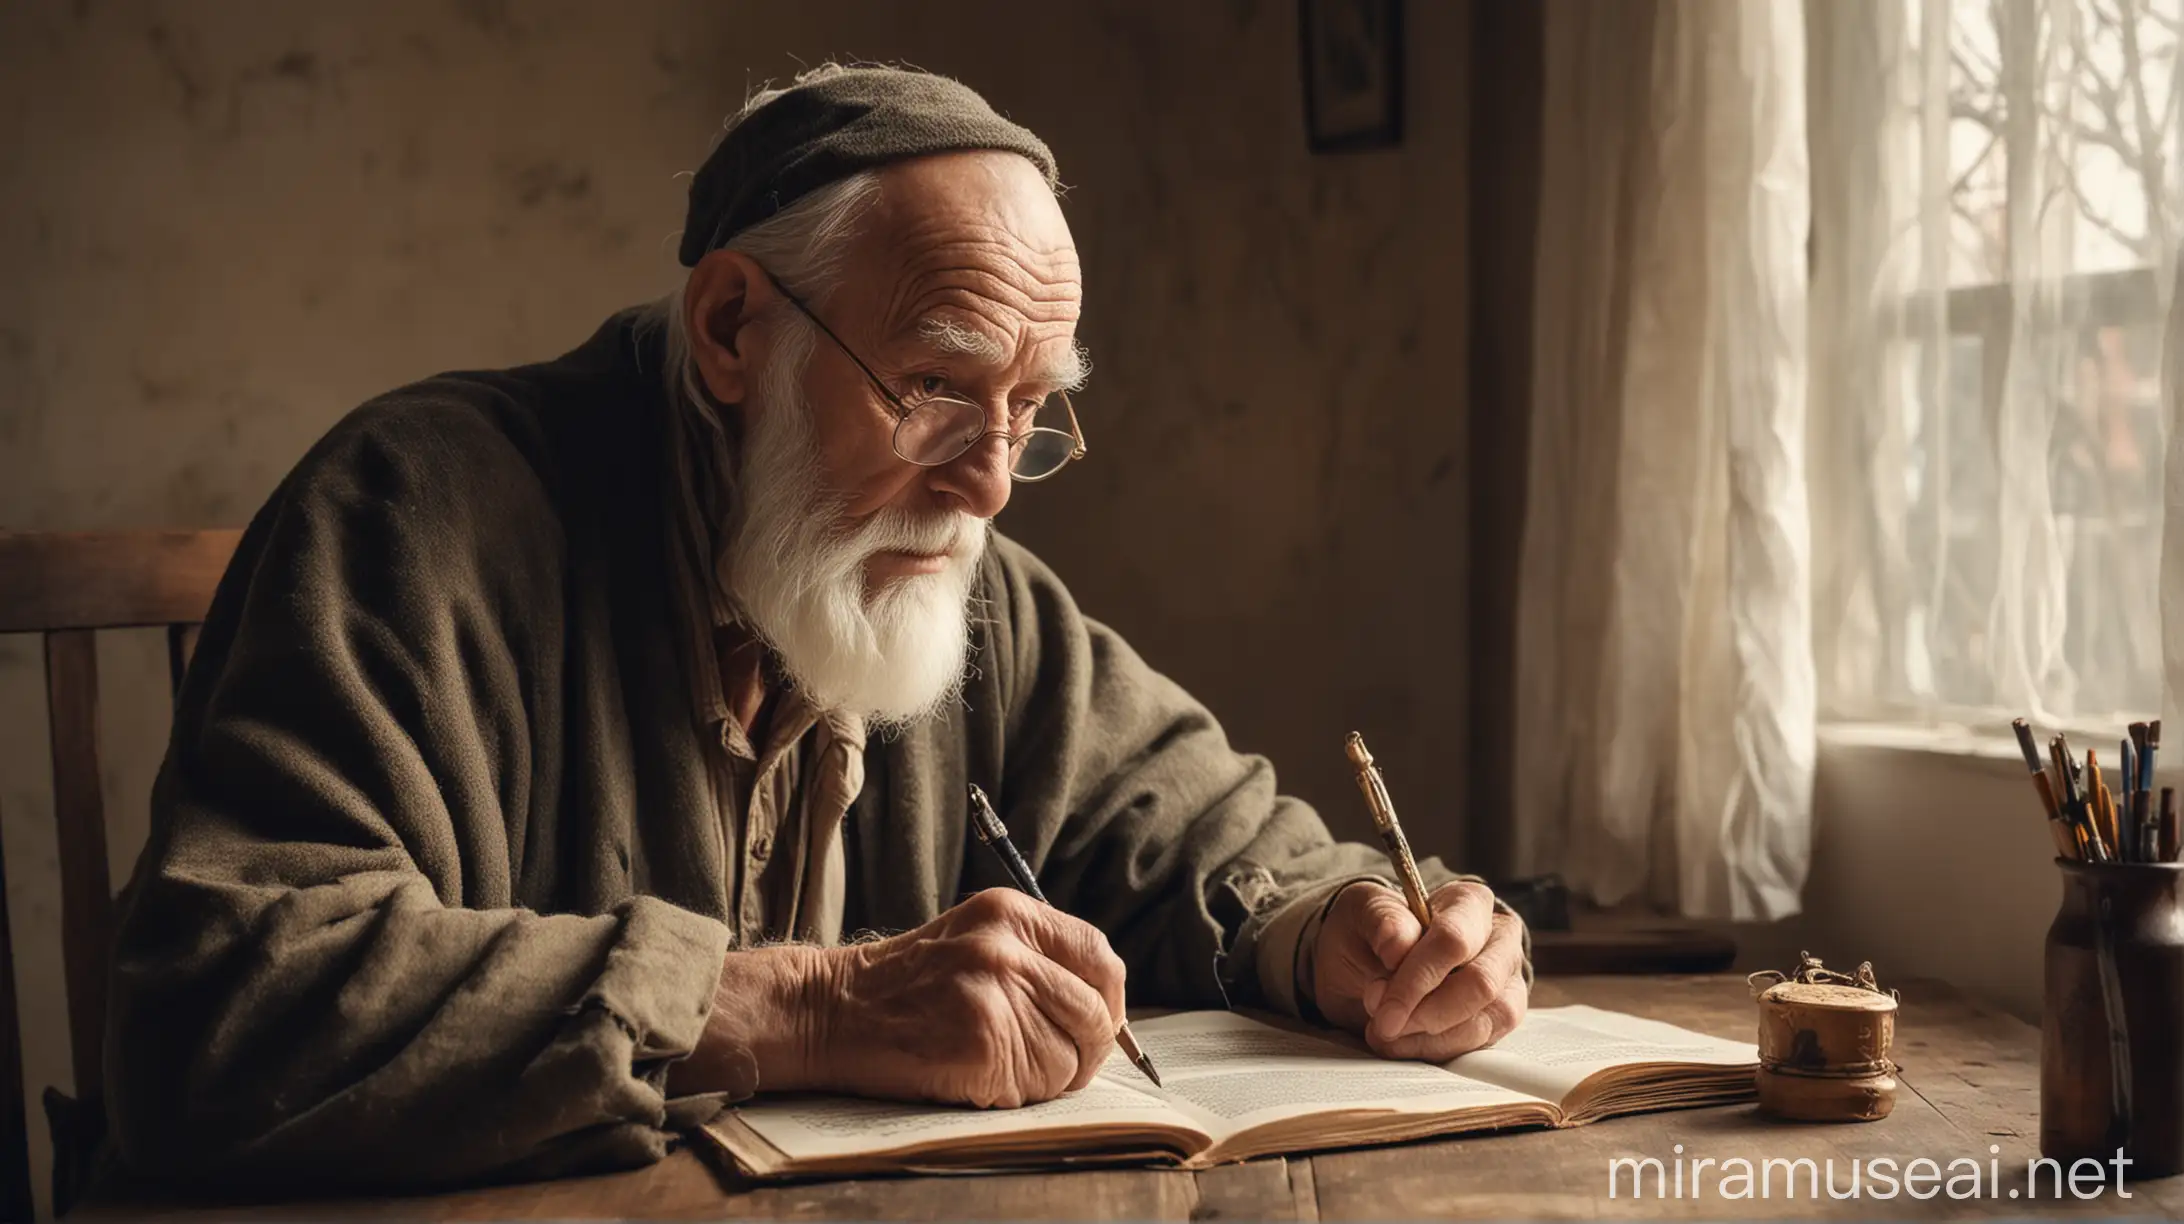 Мудрый старец сидит за столом и пишет мудрые притчи. 